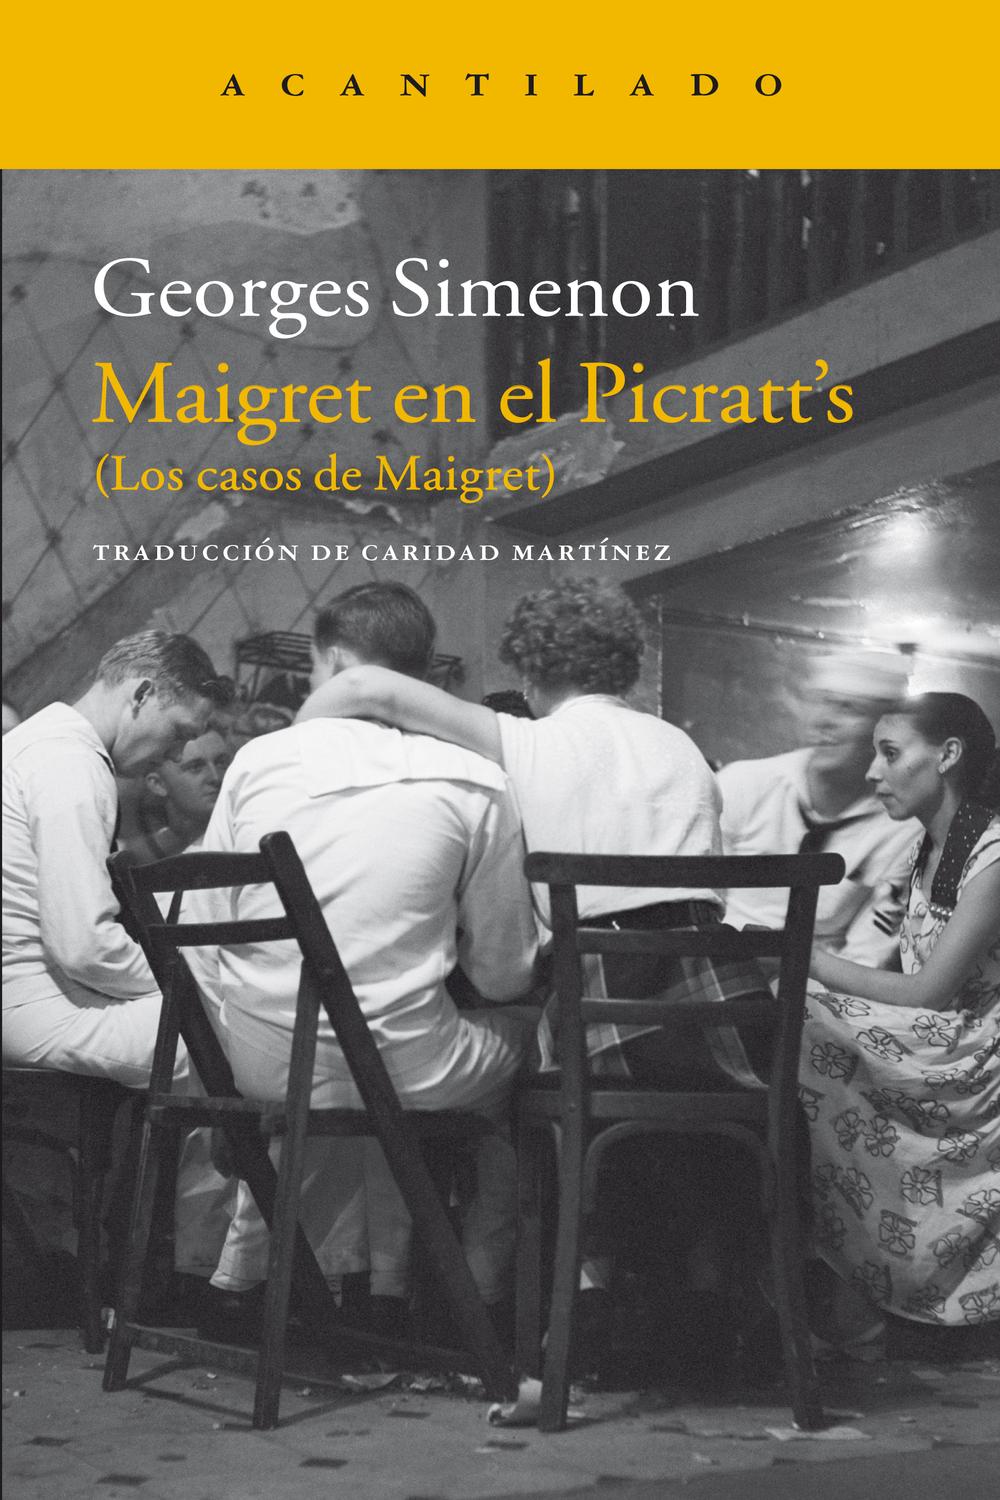 Maigret en el Picratt's - Georges Simenon,Caridad Mart?nez,